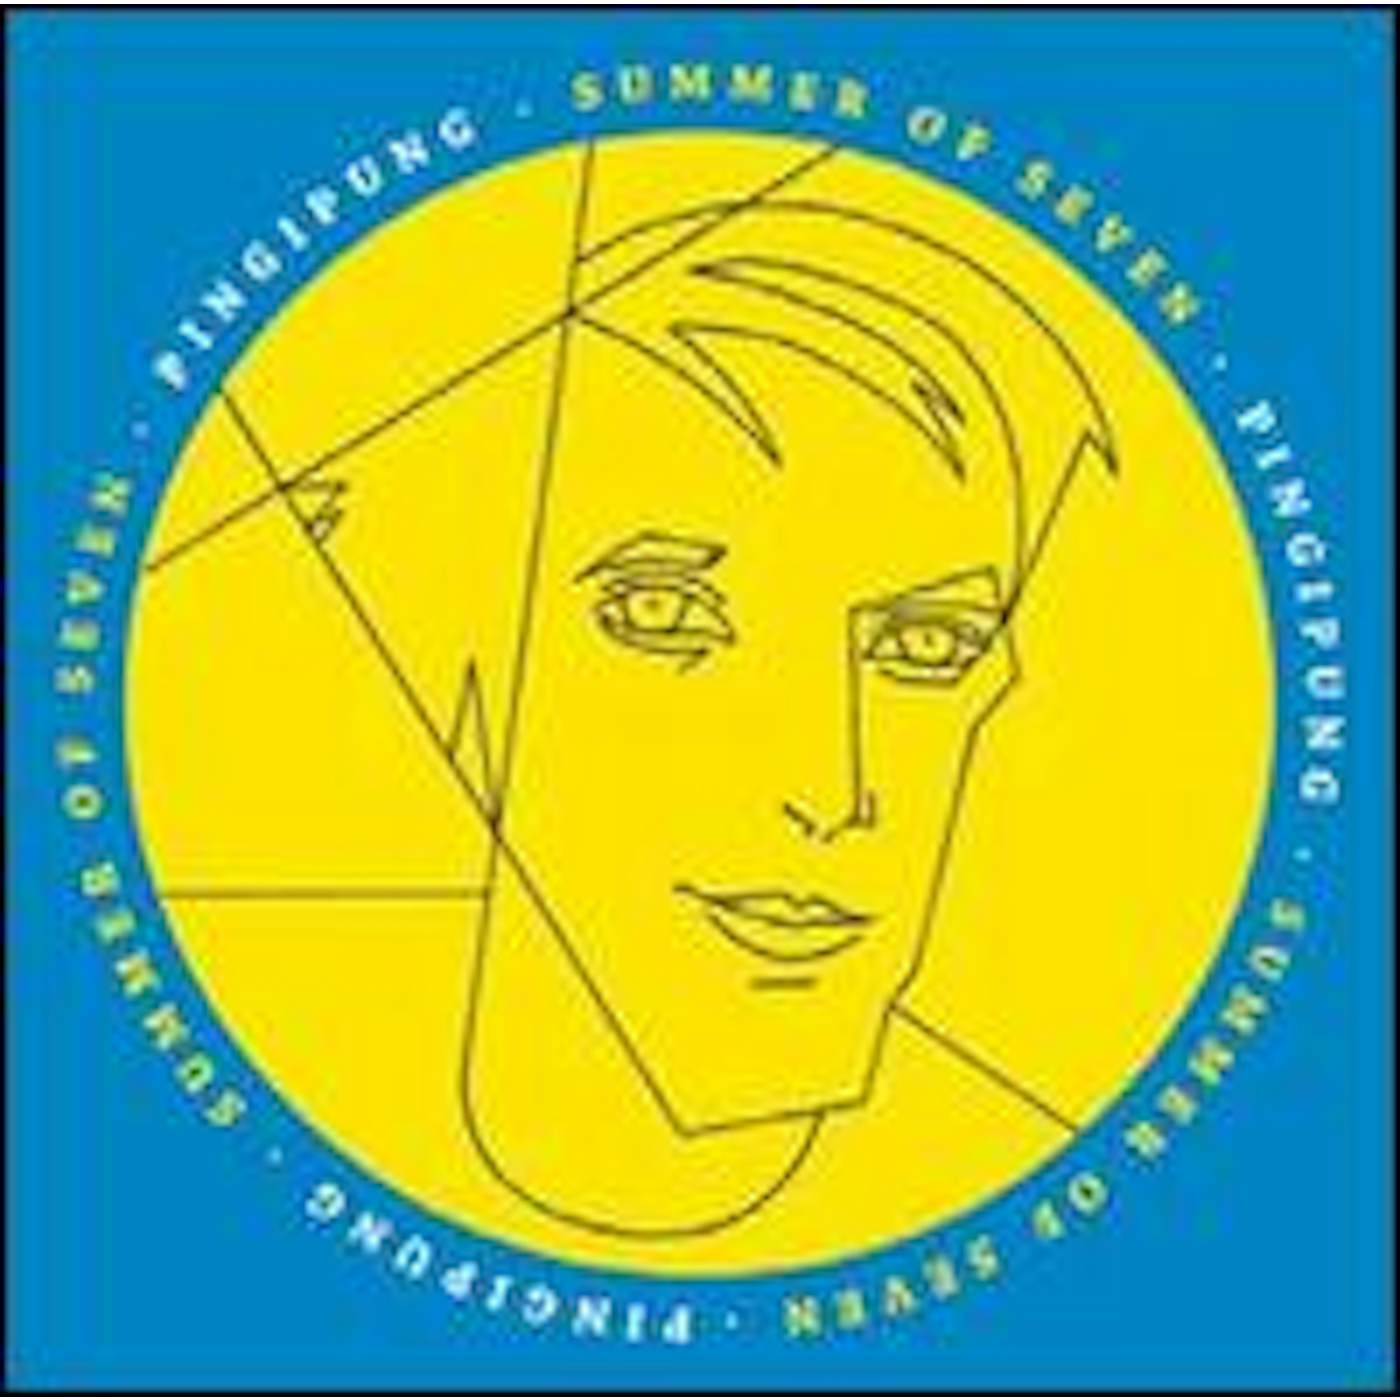 Springintgut Summer of Seven 1/7 Vinyl Record